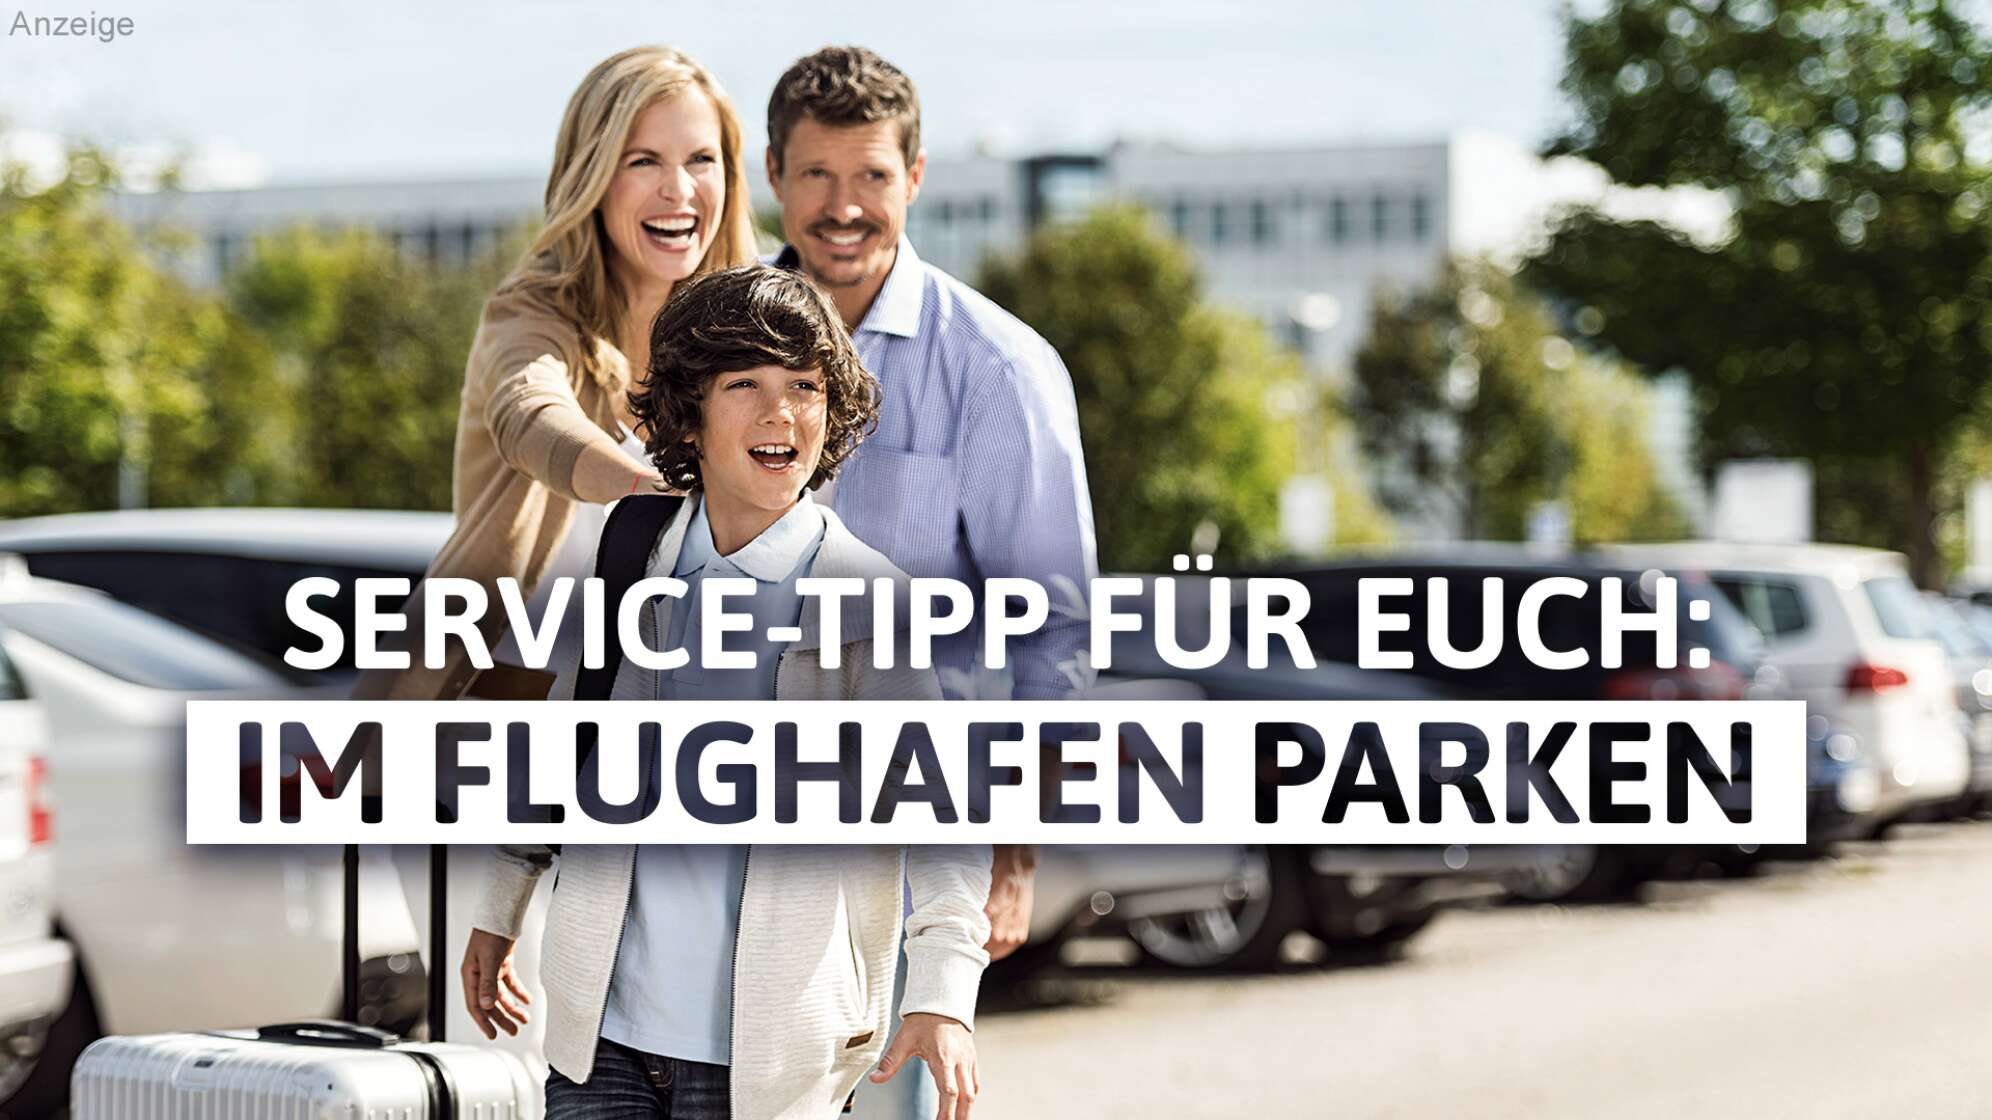 Service-Tipp für euch: Parken im Flughafen München